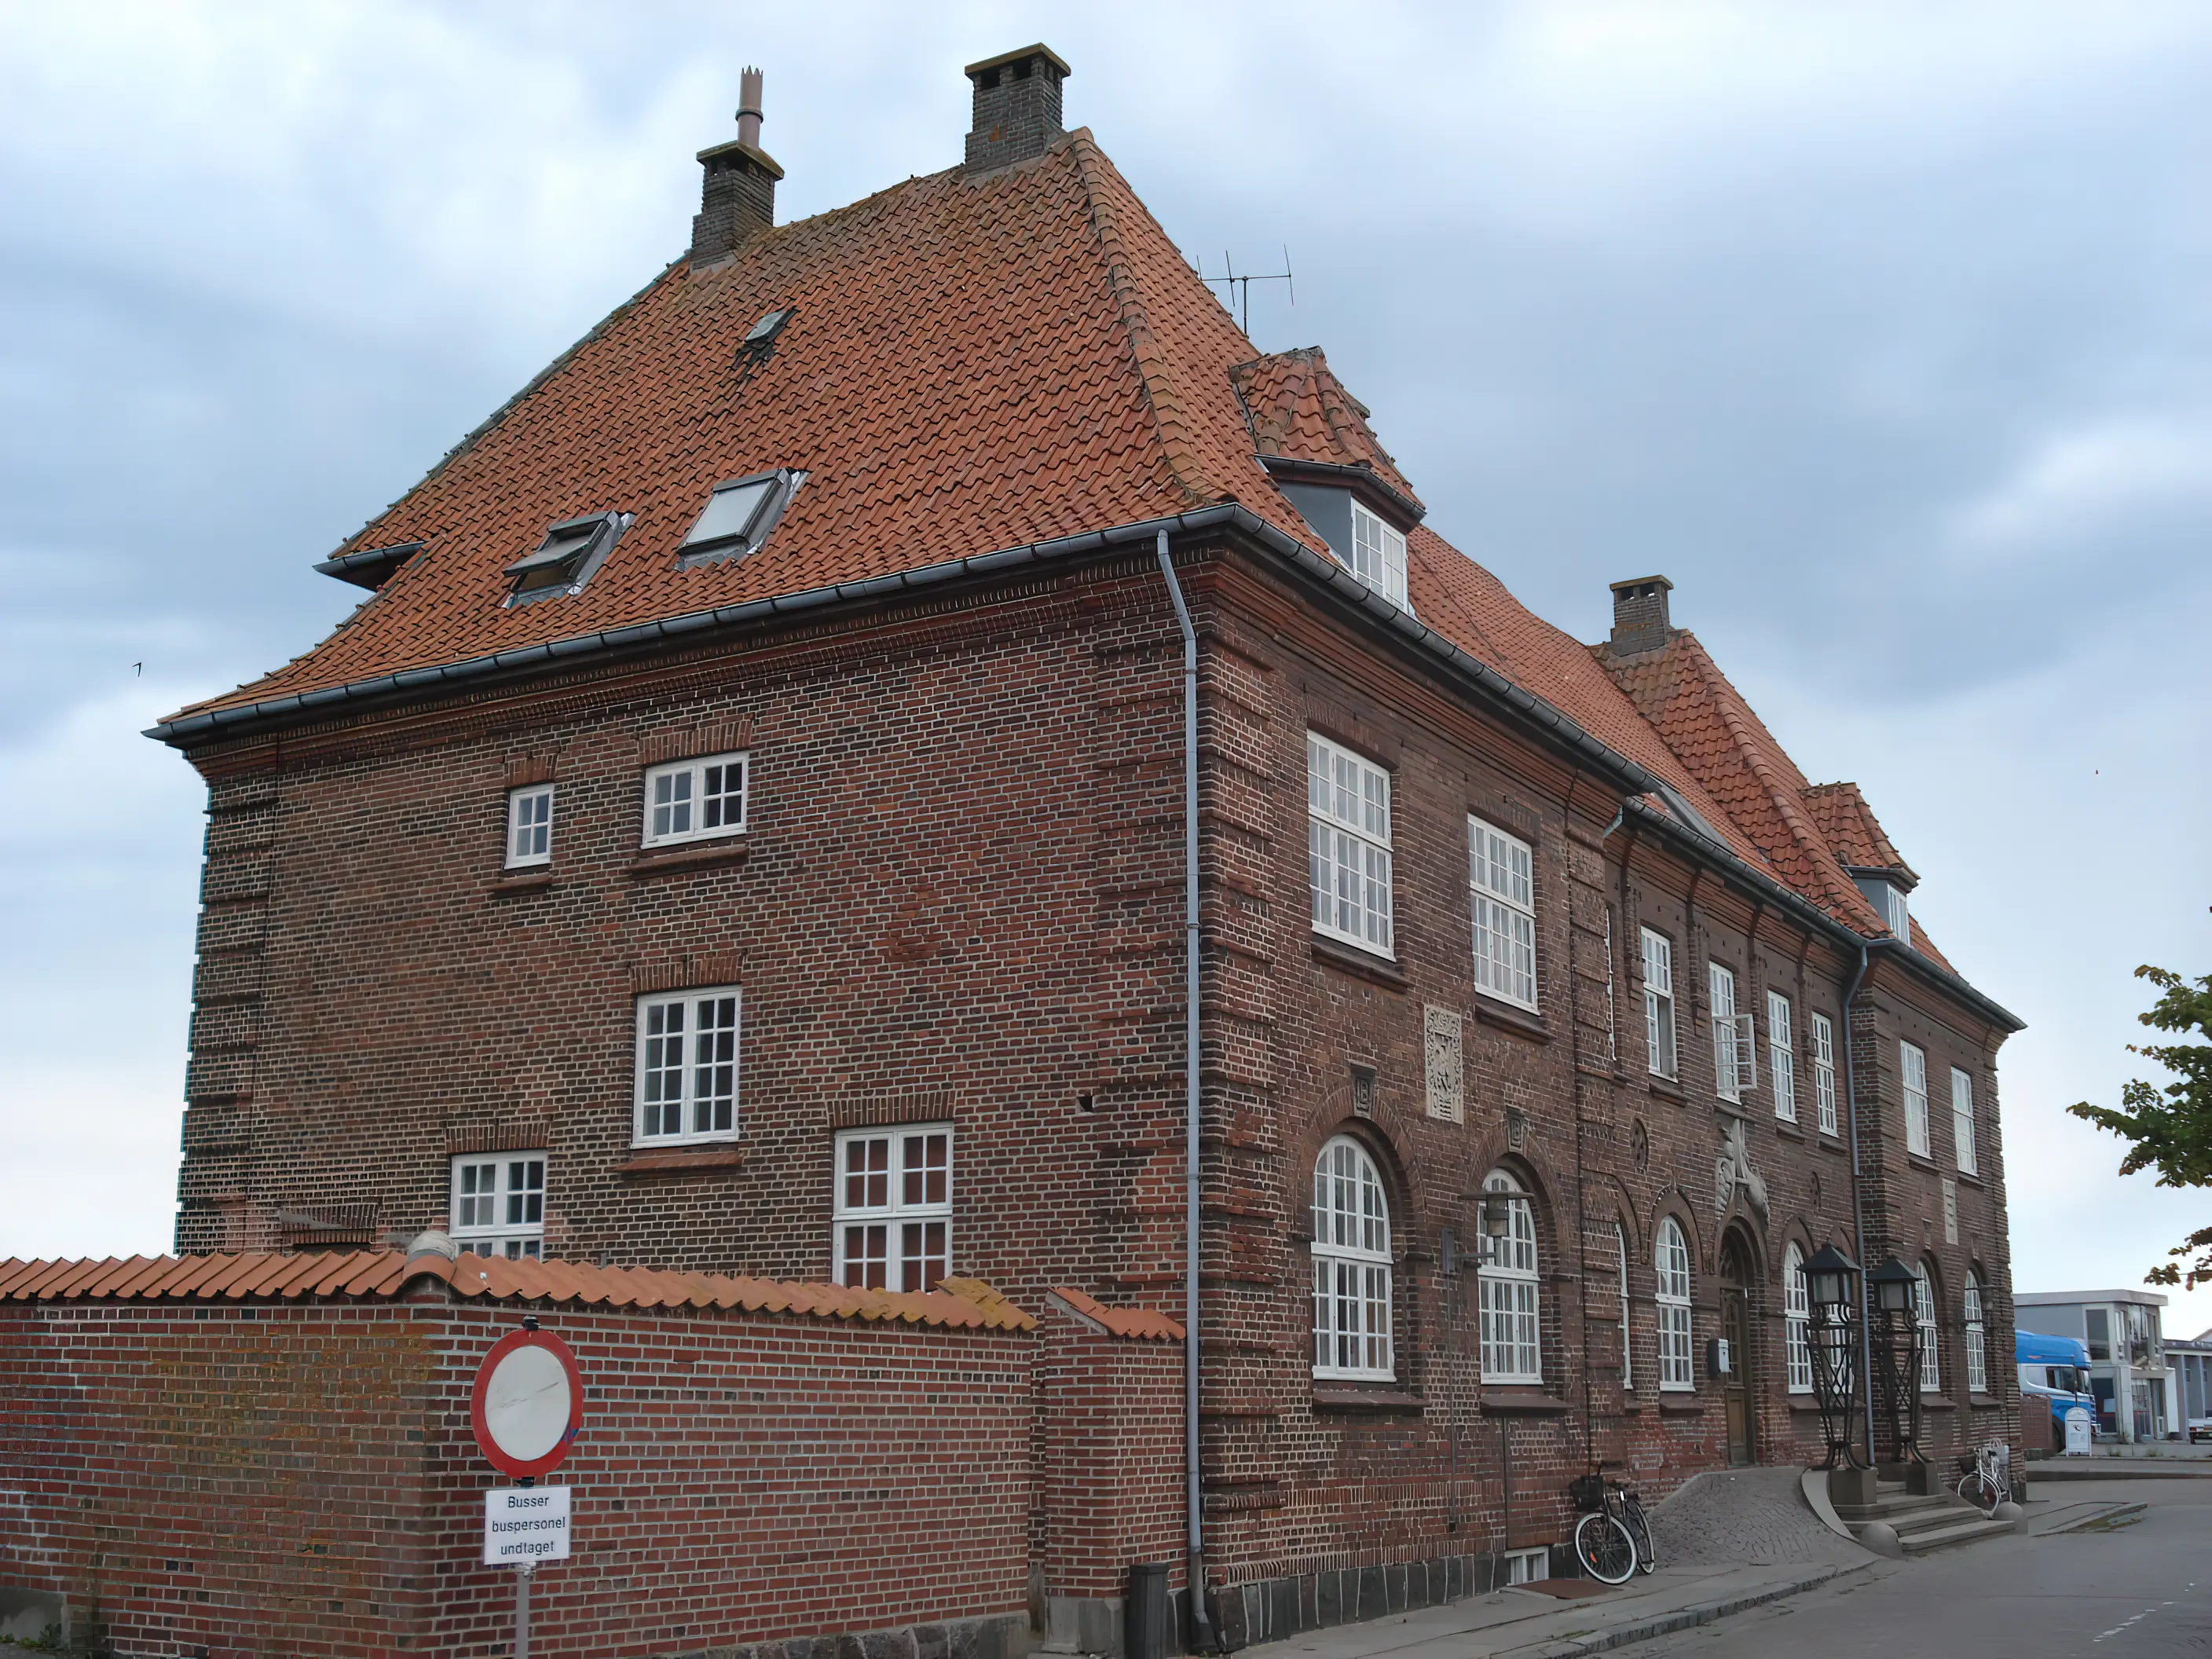 Billede af Rudkøbing Station.